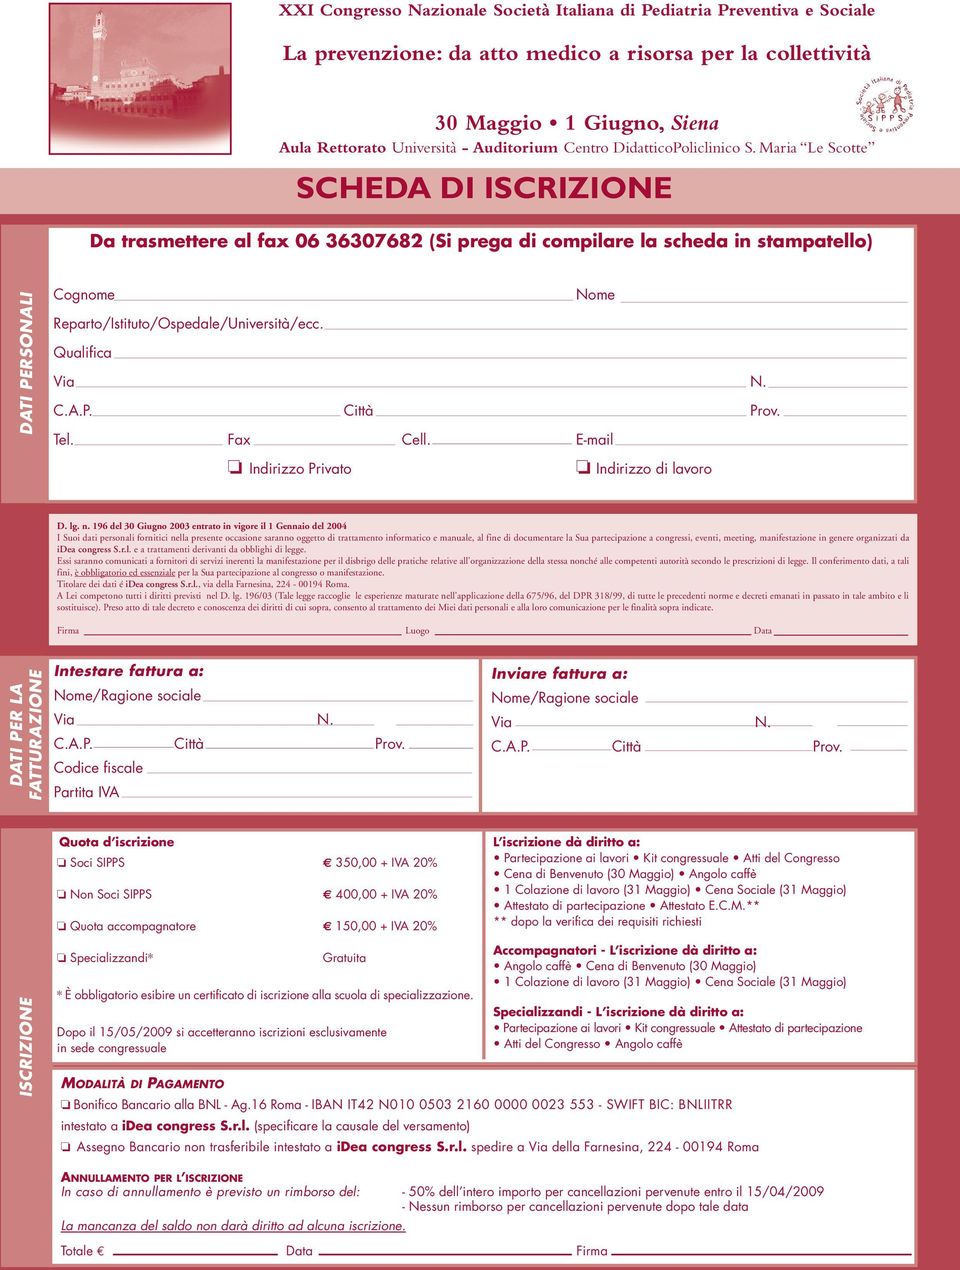 Maria Le Scotte SCHEDA DI ISCRIZIONE Da trasmettere al fax 06 36307682 (Si prega di compilare la scheda in stampatello) DATI PERSONALI Cognome Nome Reparto/Istituto/Ospedale/Università/ecc.